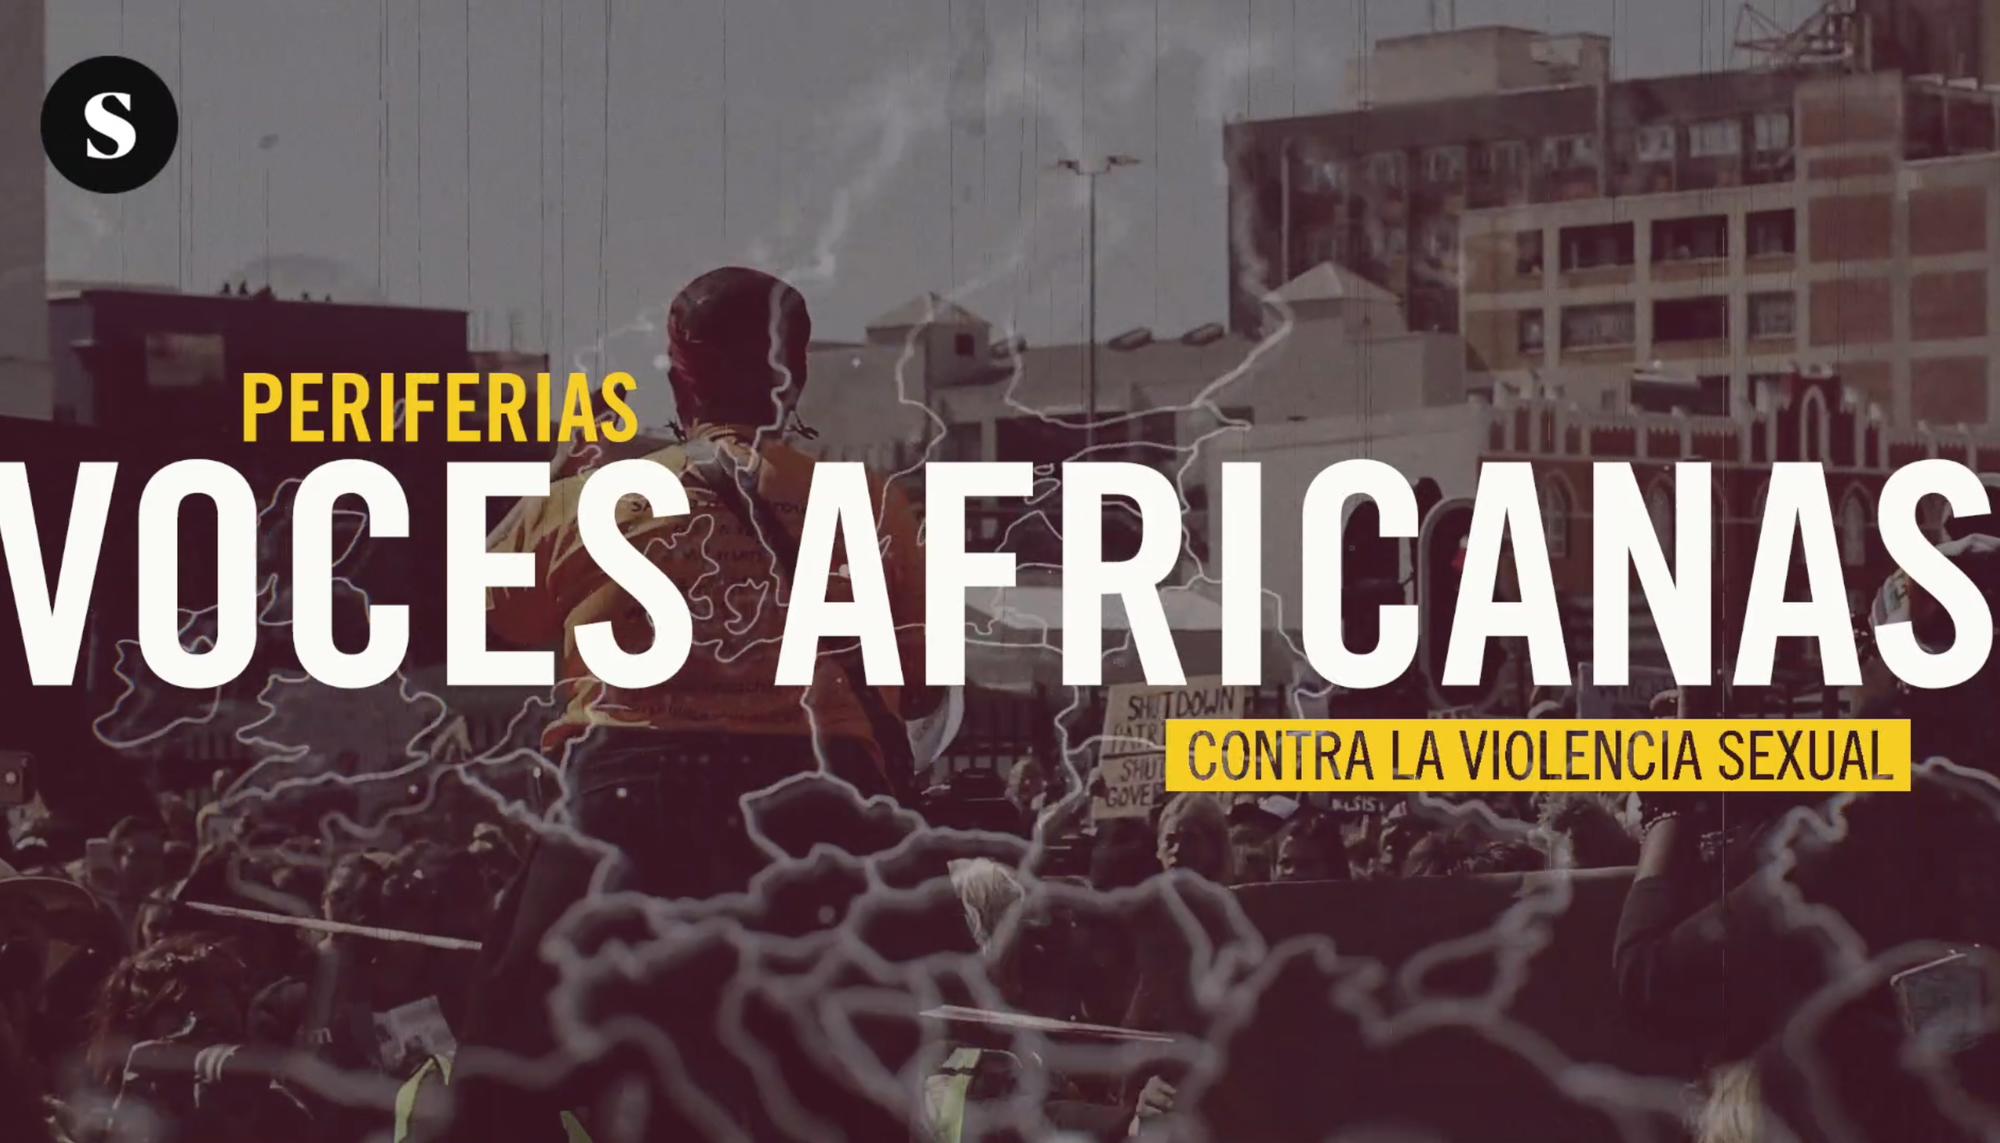 Periferias 2.4: Voces africanas contra la violencia sexual